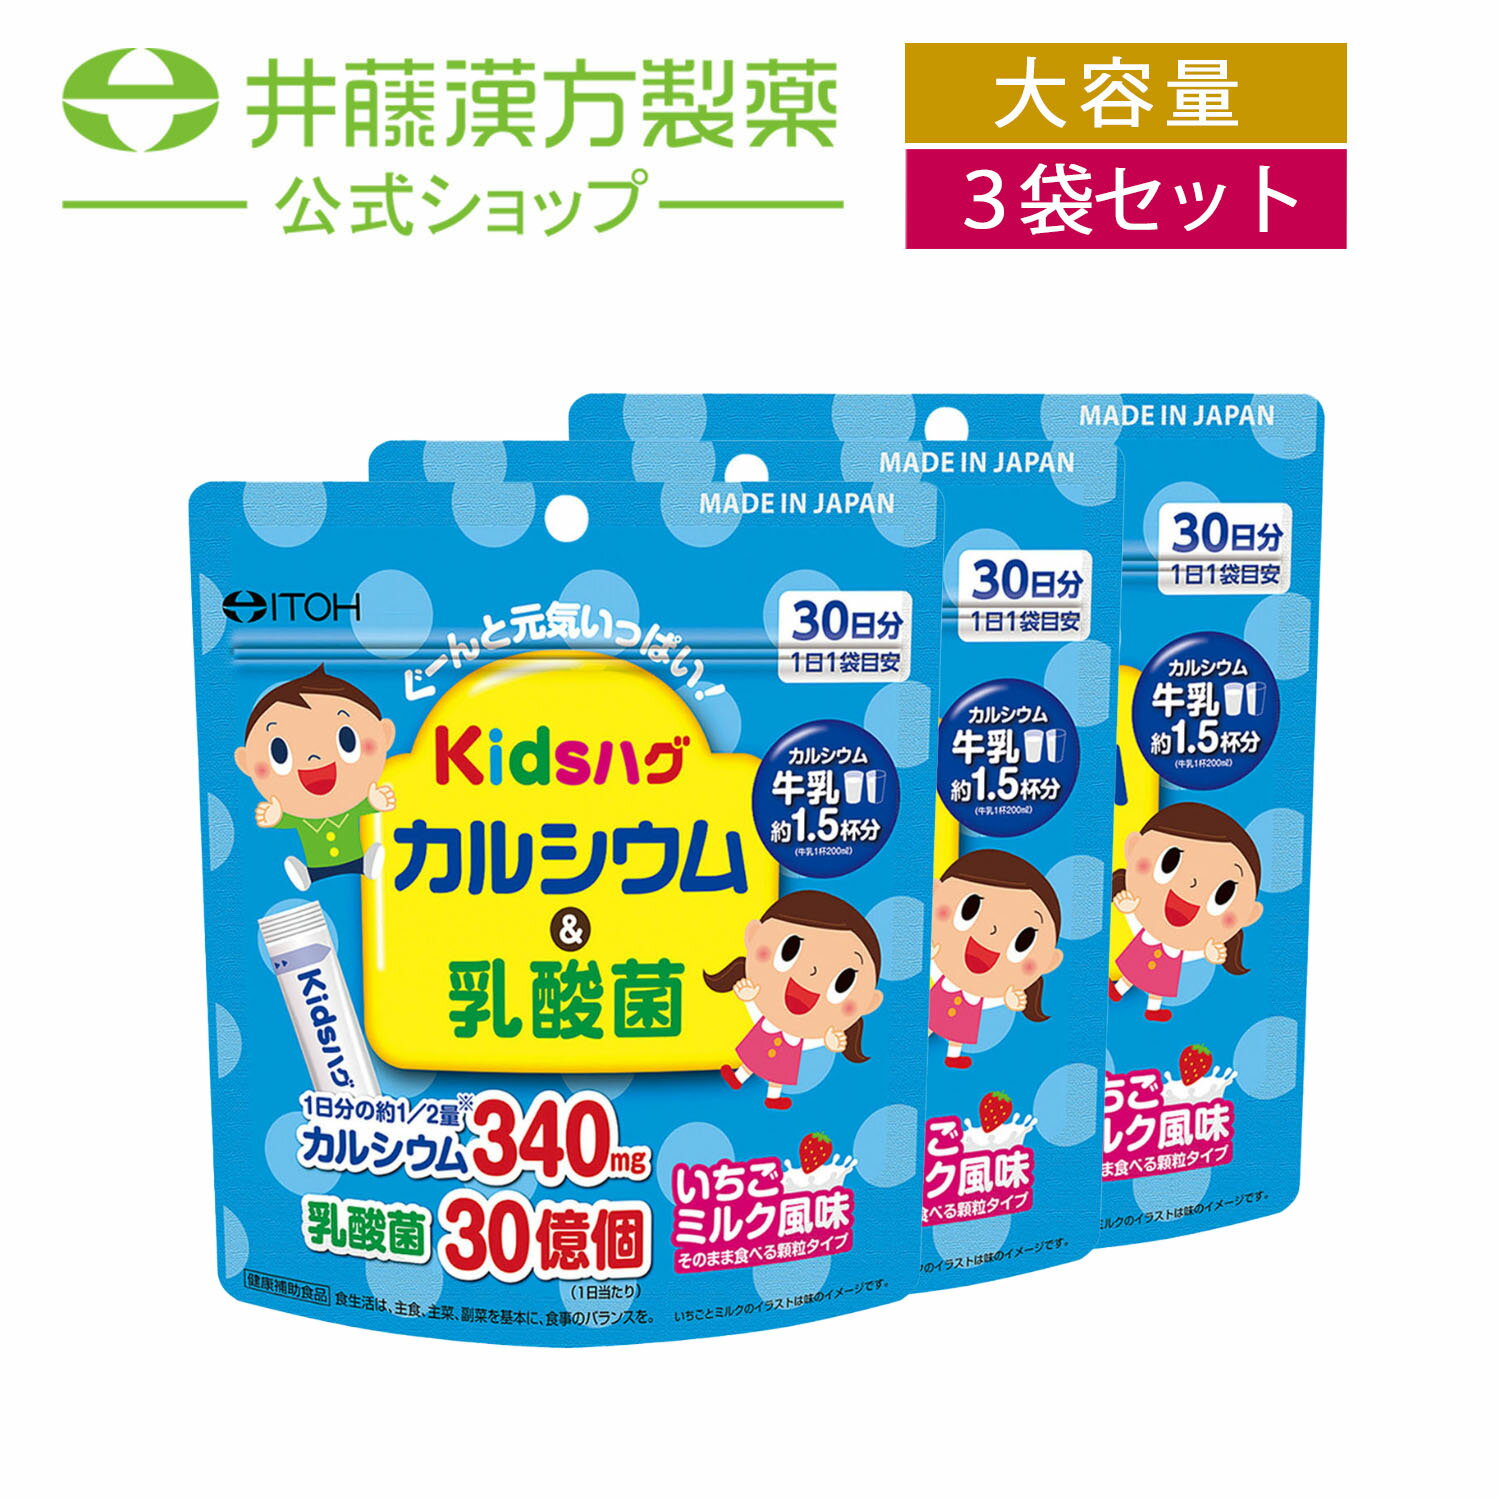 1袋でカルシウムを牛乳約1.5杯分 （牛乳1杯200ml） 摂ることができる顆粒スティックタイプです。更に、子供の成長のために必要な乳酸菌、カルシウムと相性の良いビタミンDを配合し、子供が好むいちごミルク風味に仕上げました。 単品販売はこちら ・広告文責：井藤漢方製薬株式会社 03-5380-6955　 ・メーカー：井藤漢方製薬株式会社 ・生産国：日本 ・商品区分：健康食品 ・名称（一般的名称）：カルシウム・乳酸菌末含有食品 ・原材料名：乳糖（アメリカ製造）、乳酸菌末 ／ 卵殻Ca（卵由来）、香料、甘味料（アスパルテーム・L-フェニルアラニン化合物）、野菜色素、ビタミンD ・内容量：60g（2g×30袋） ・賞味期限：パッケージに記載 ・保存方法：高温・多湿、直射日光を避け、涼しい所に保管してください。 ・販売者：井藤漢方製薬株式会社 大阪府東大阪市長田東